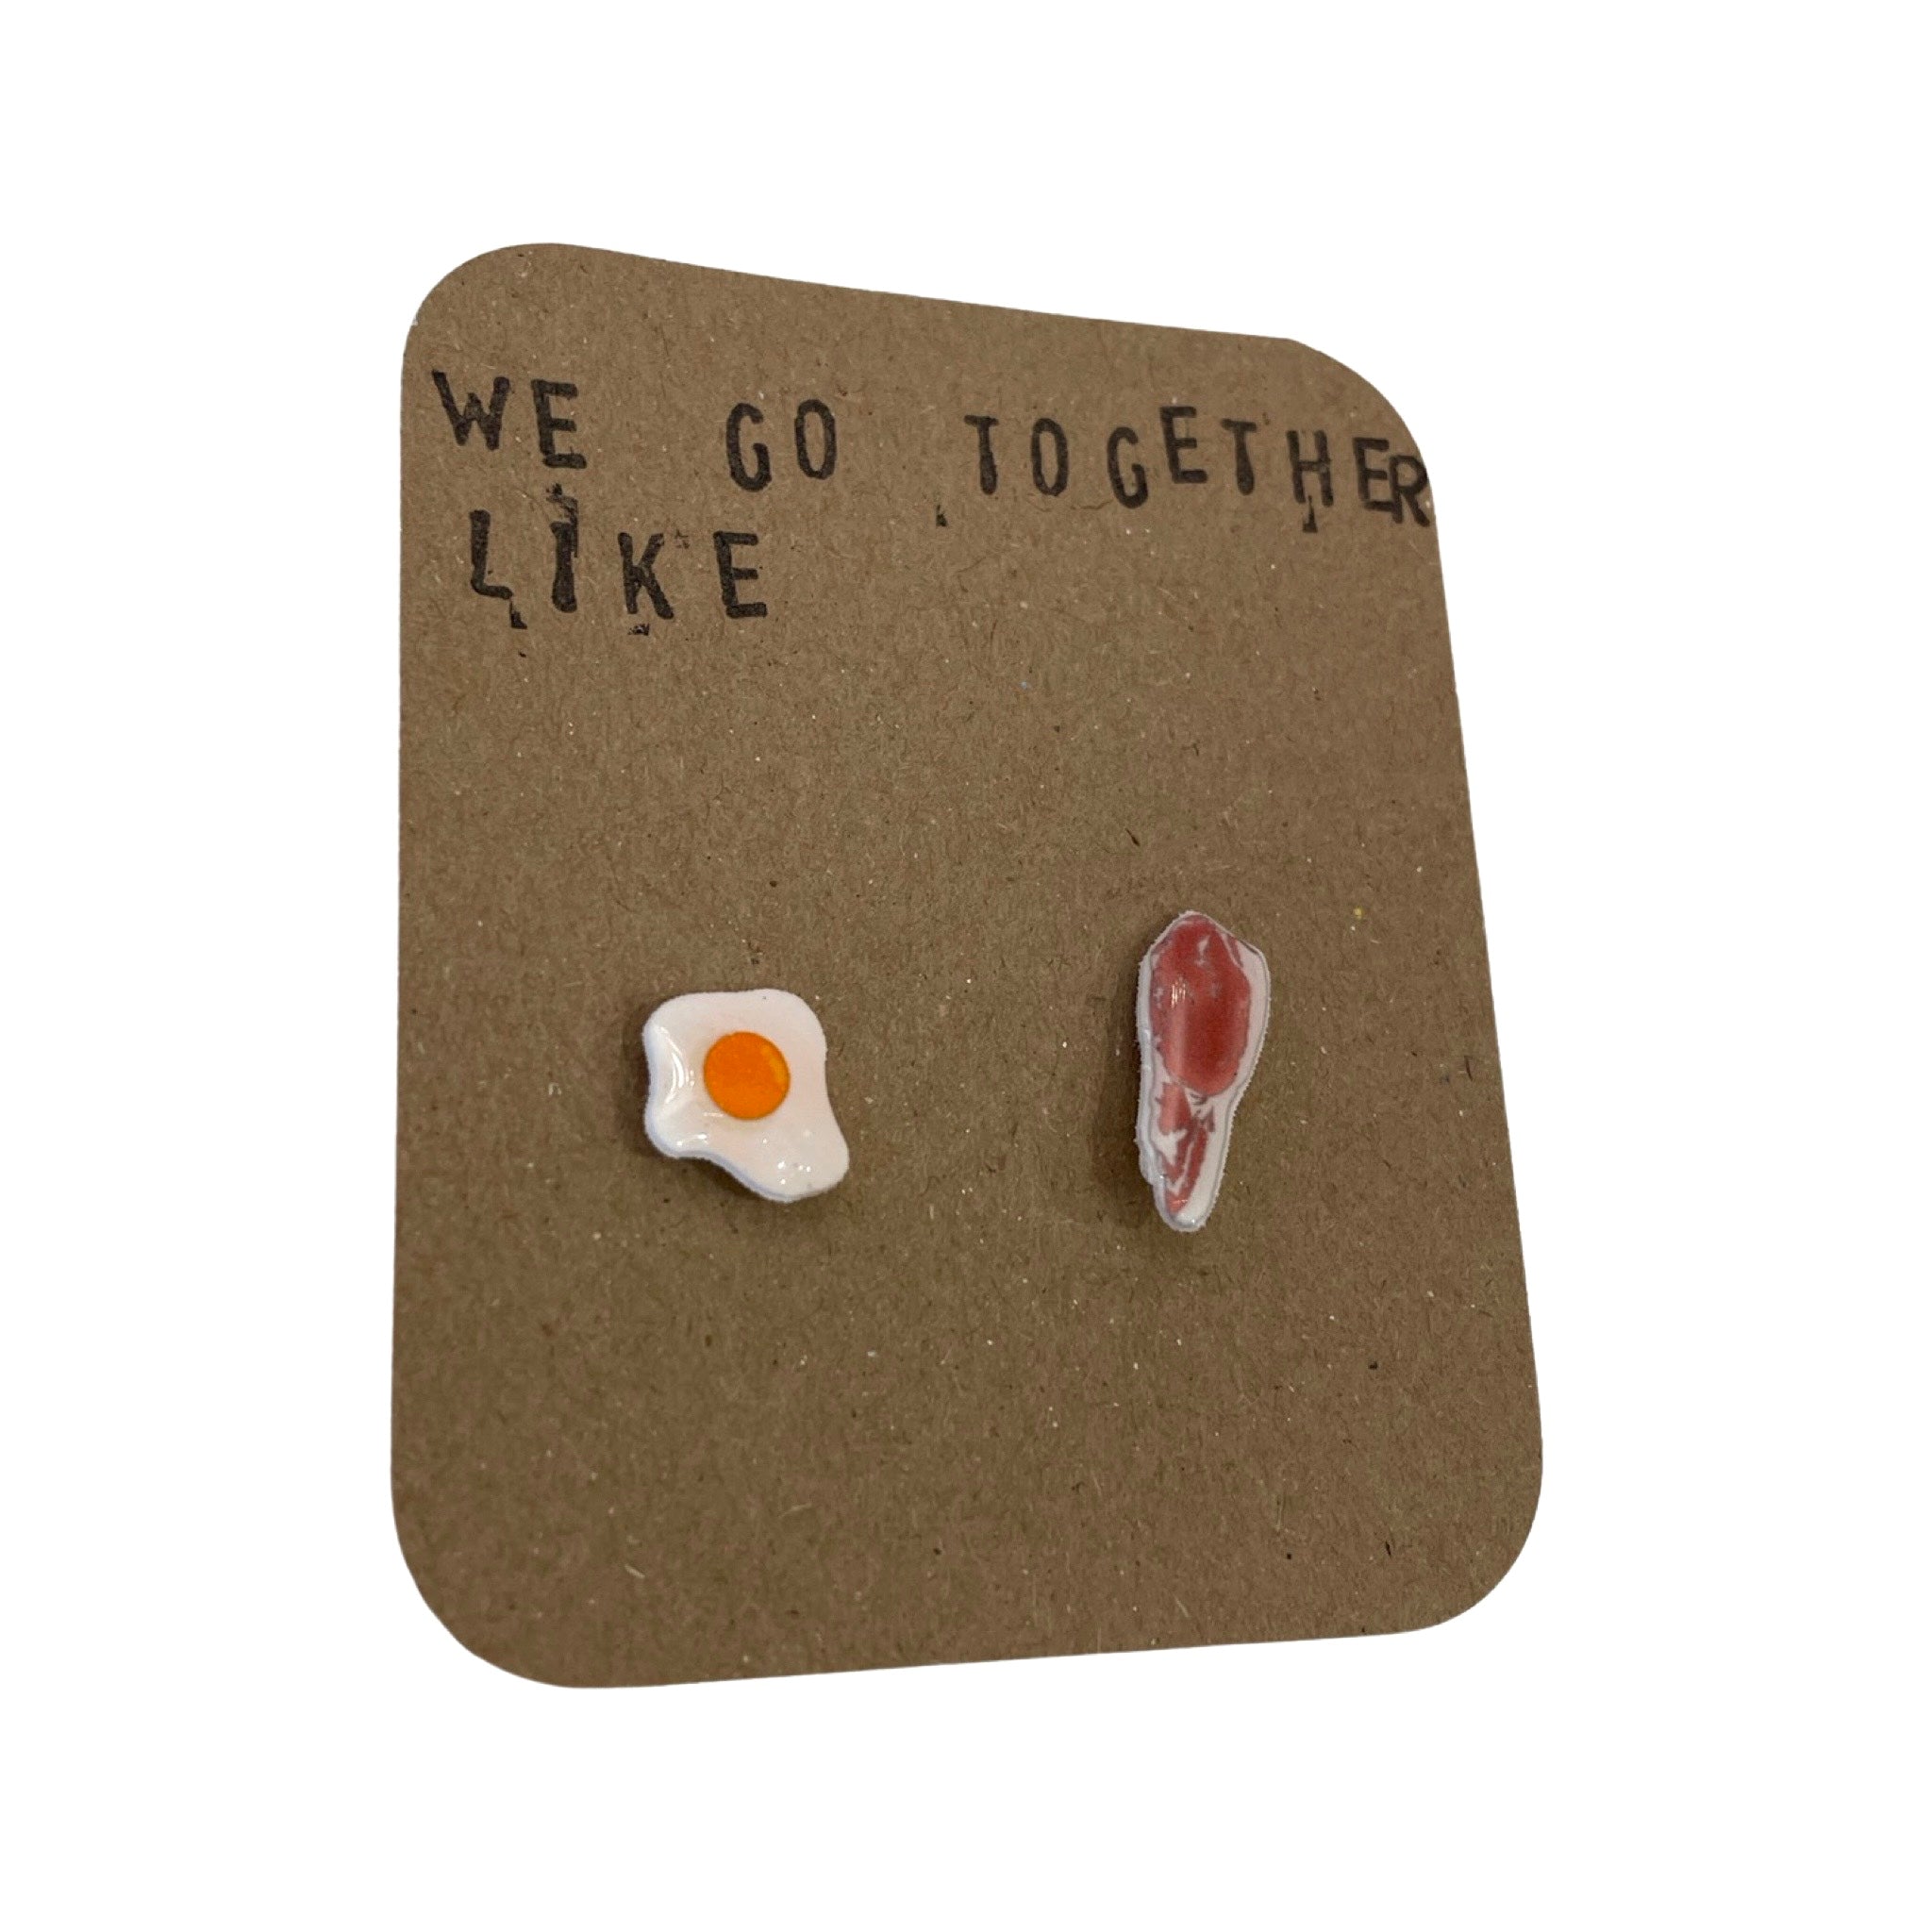 Egg & Bacon Earrings